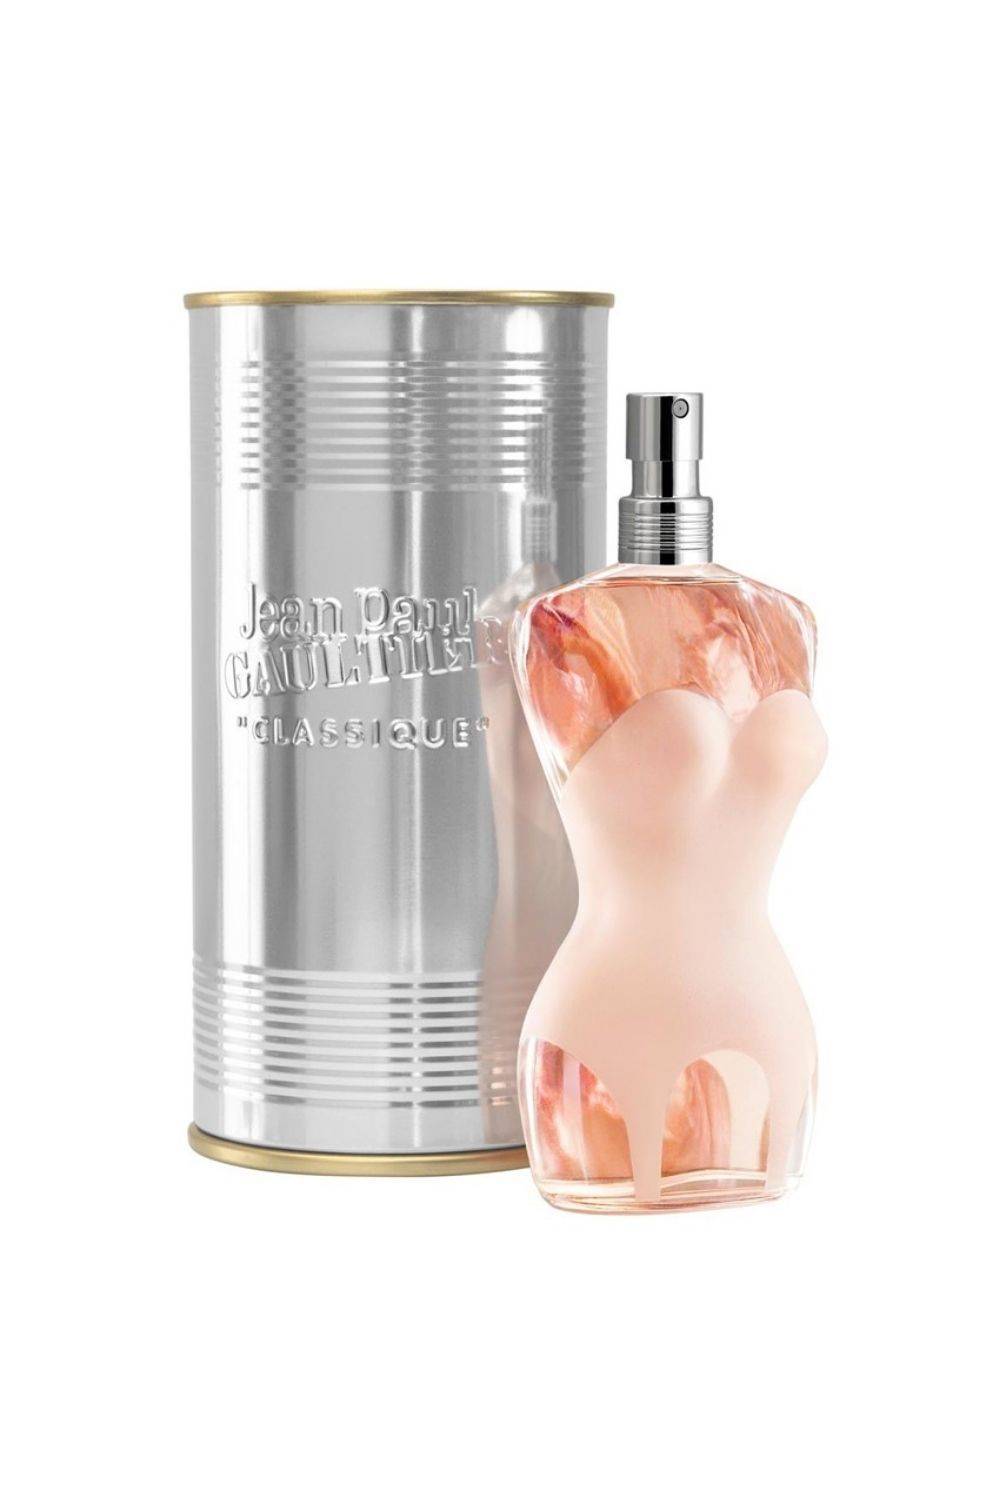 Perfumes que dejan huella: Classique de Jean Paul Gaultier